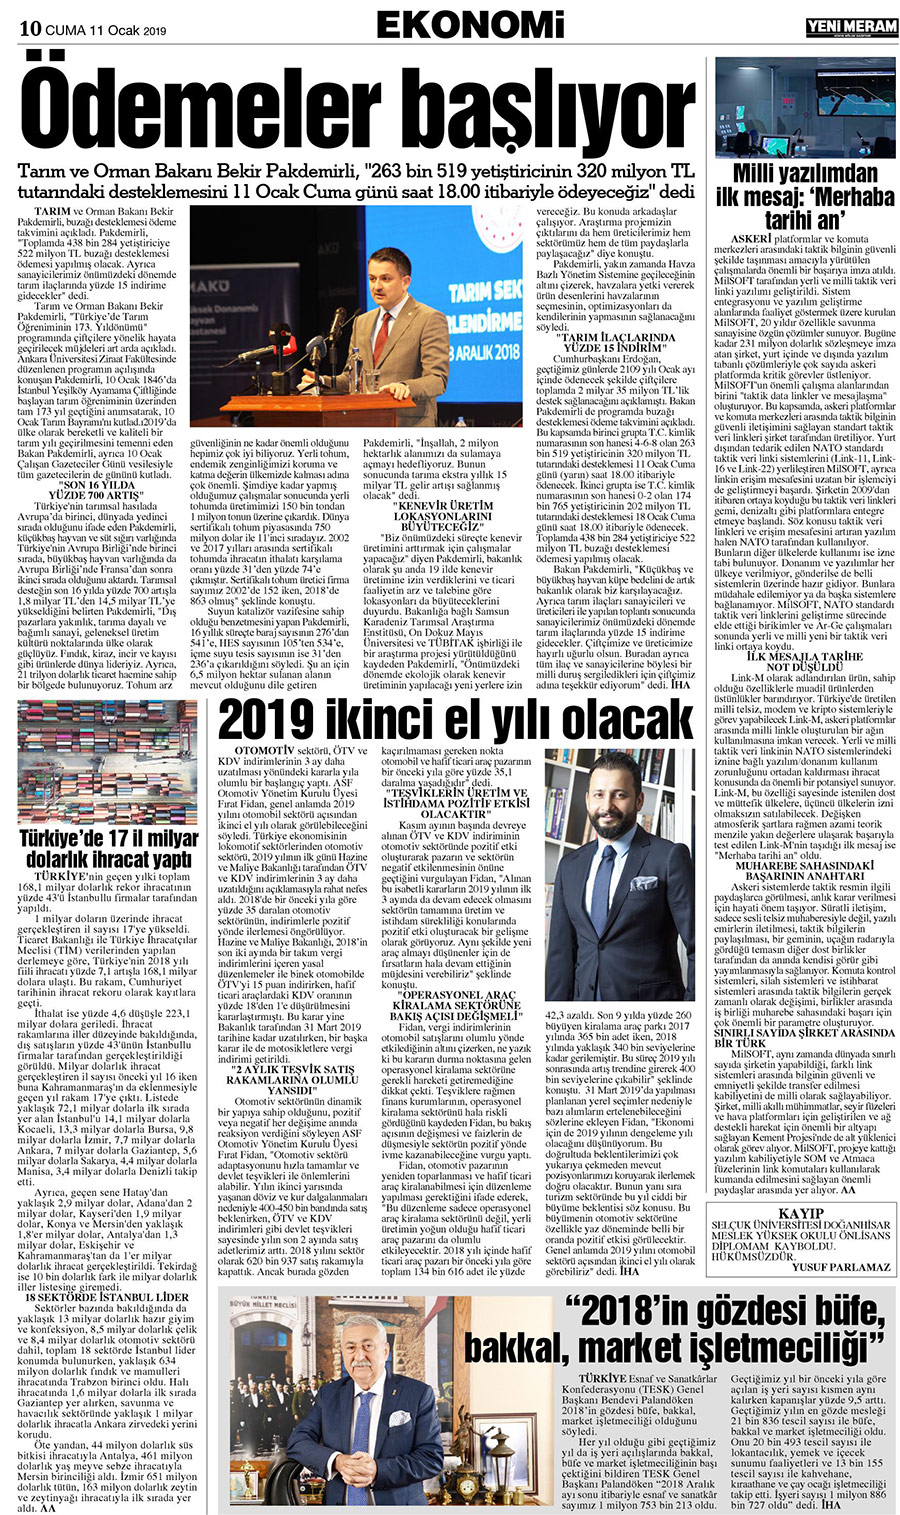 11 Ocak 2019 Yeni Meram Gazetesi